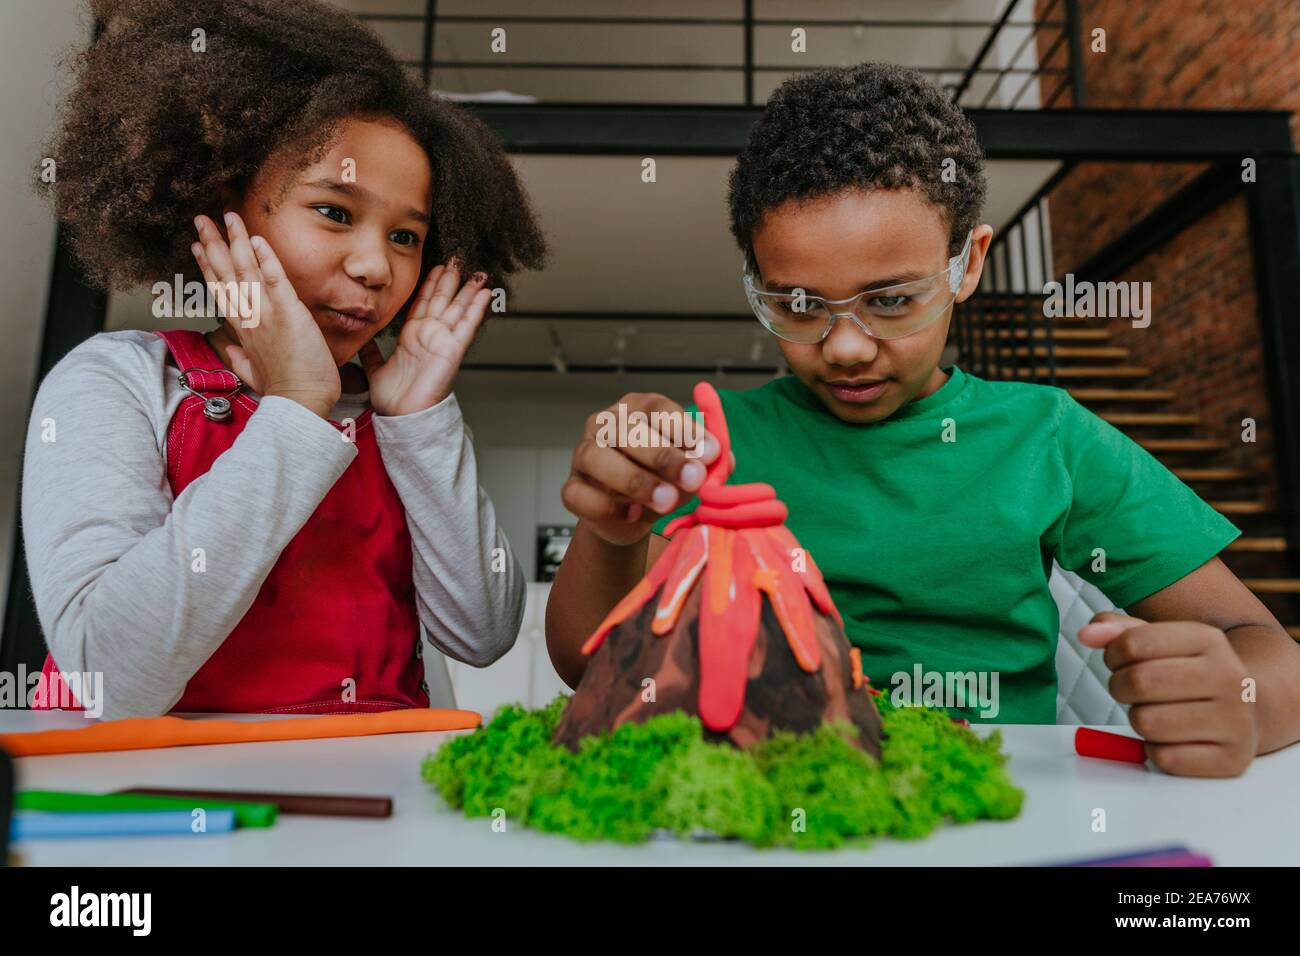 Sœur et frère ayant le plaisir de faire le bricolage volcan modèle des enfants jouent l'argile pour le projet d'école. Concept d'éducation à domicile. Banque D'Images